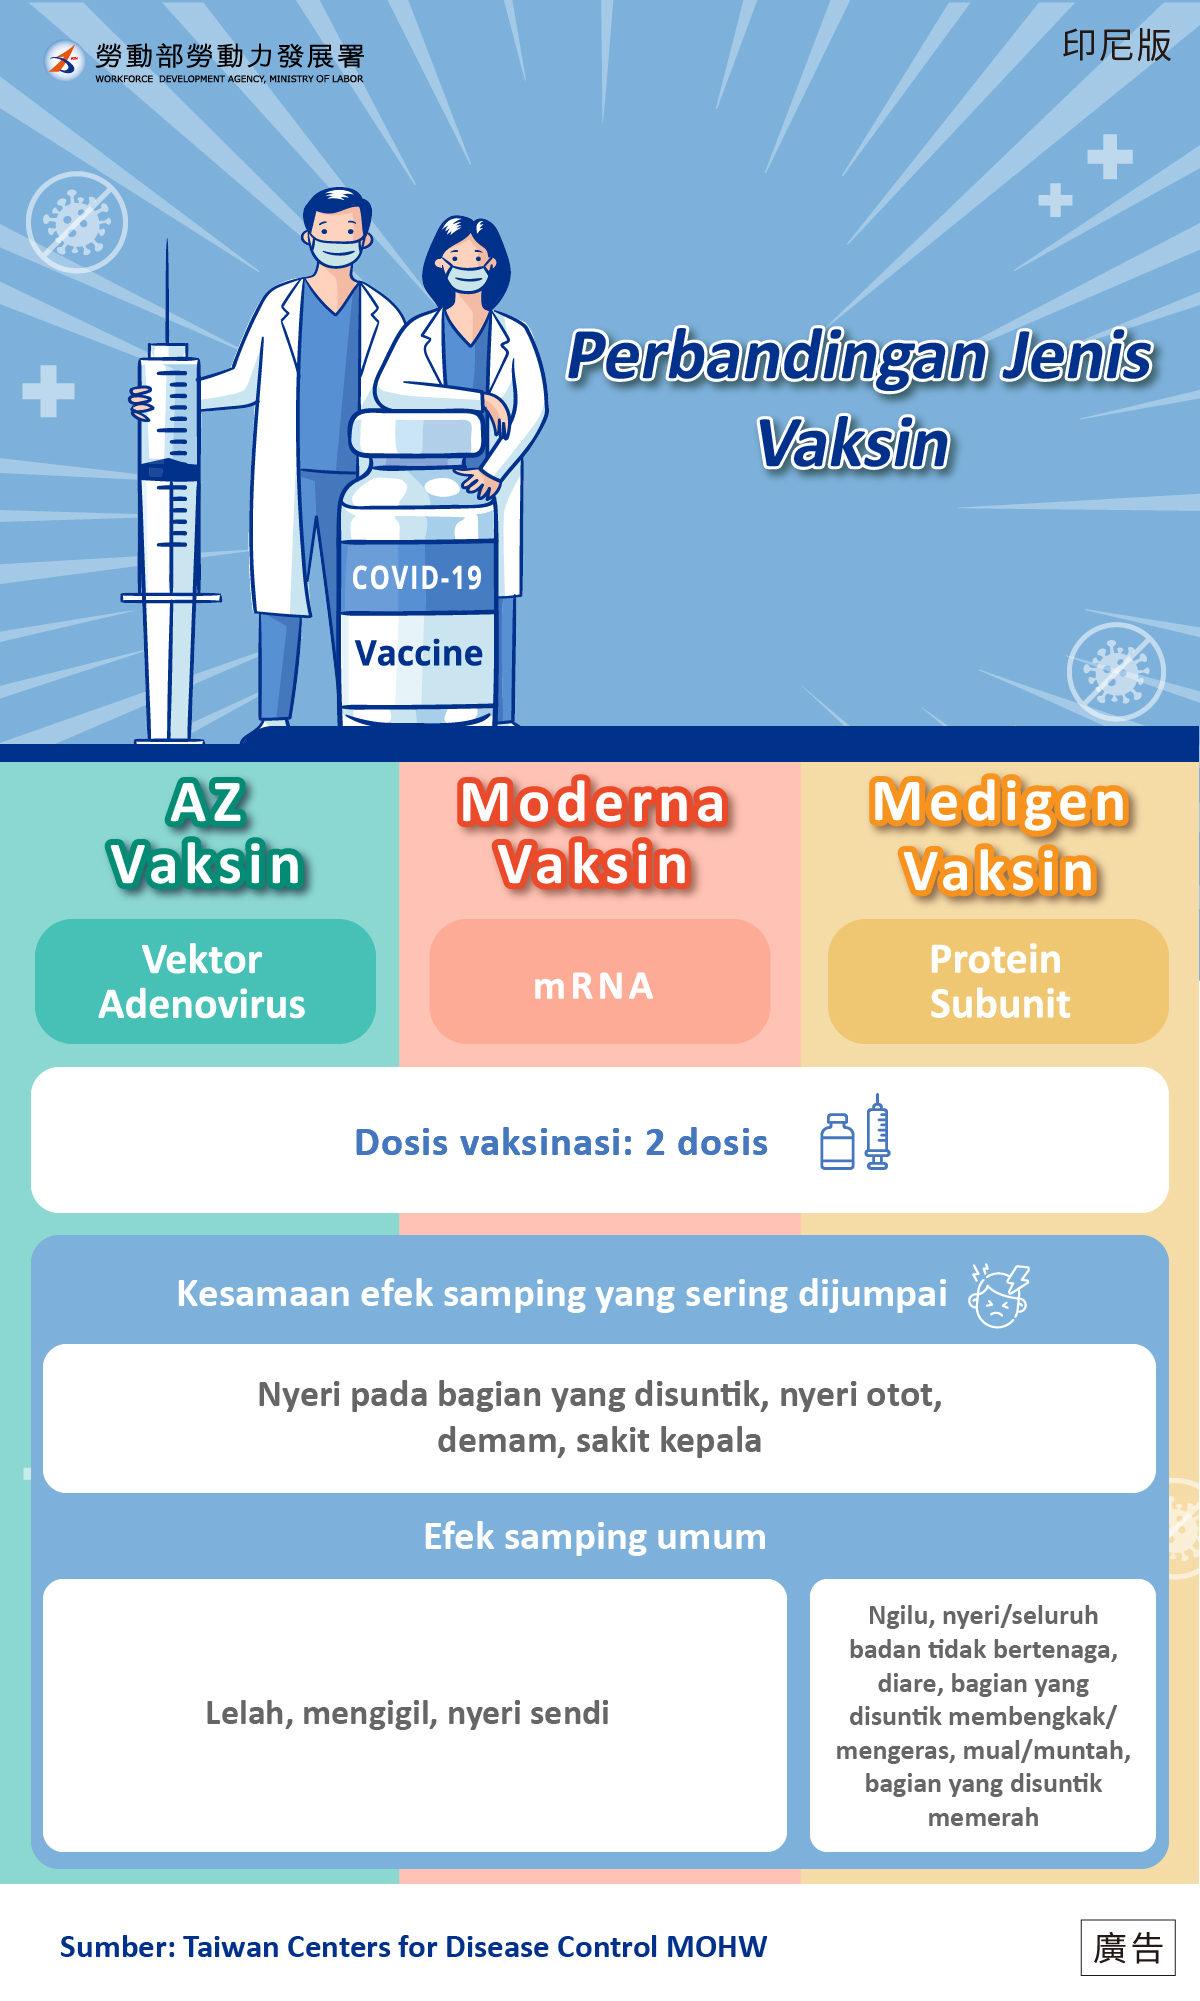 Perbandingan Jenis Vaksin